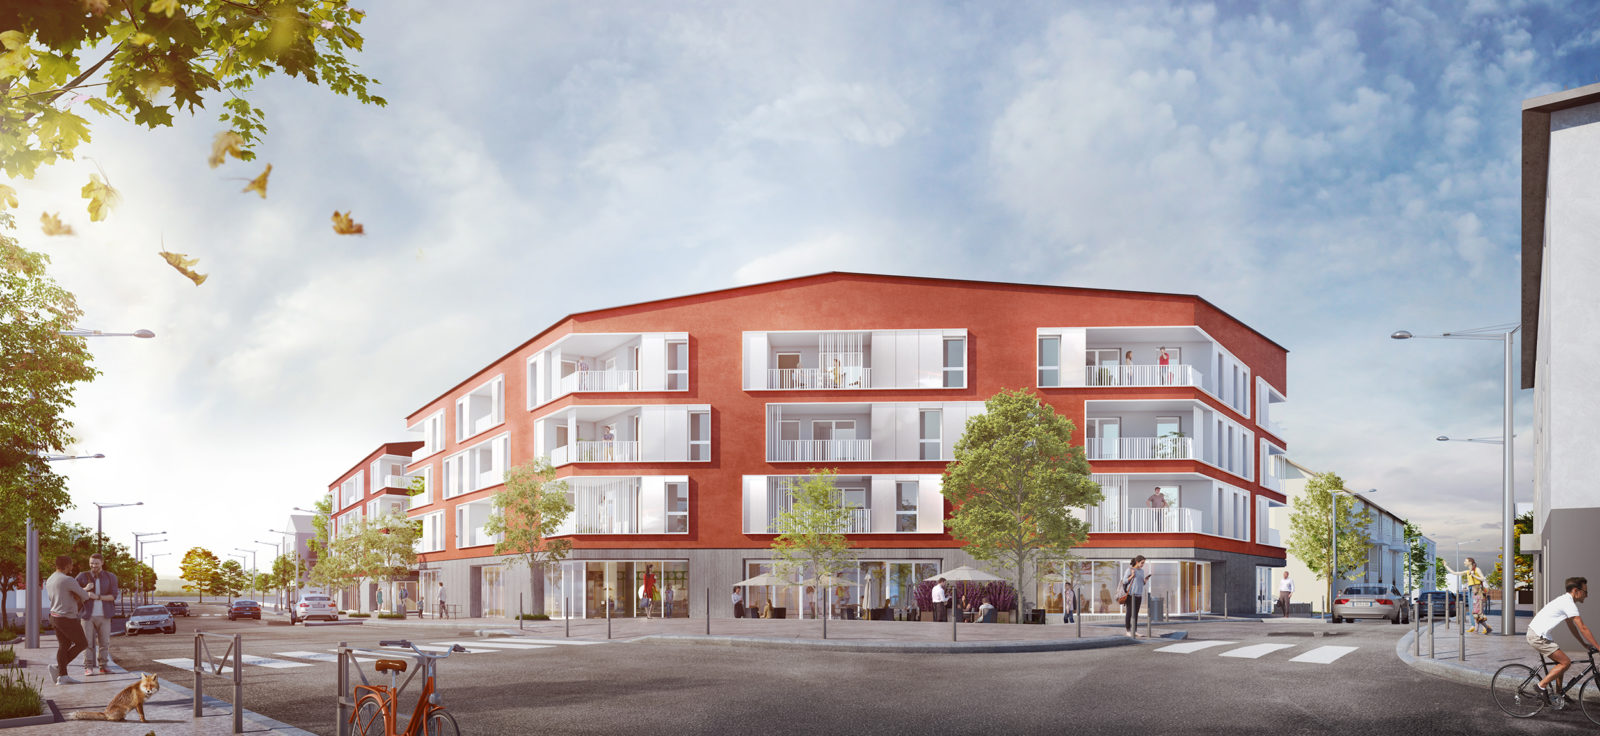 Groupe Cardinal présente le programme immobilier de La Verpillière (38)groupe-cardinal-aux-marronniers-la-verpilliere-z-architecture-facade-1600x736